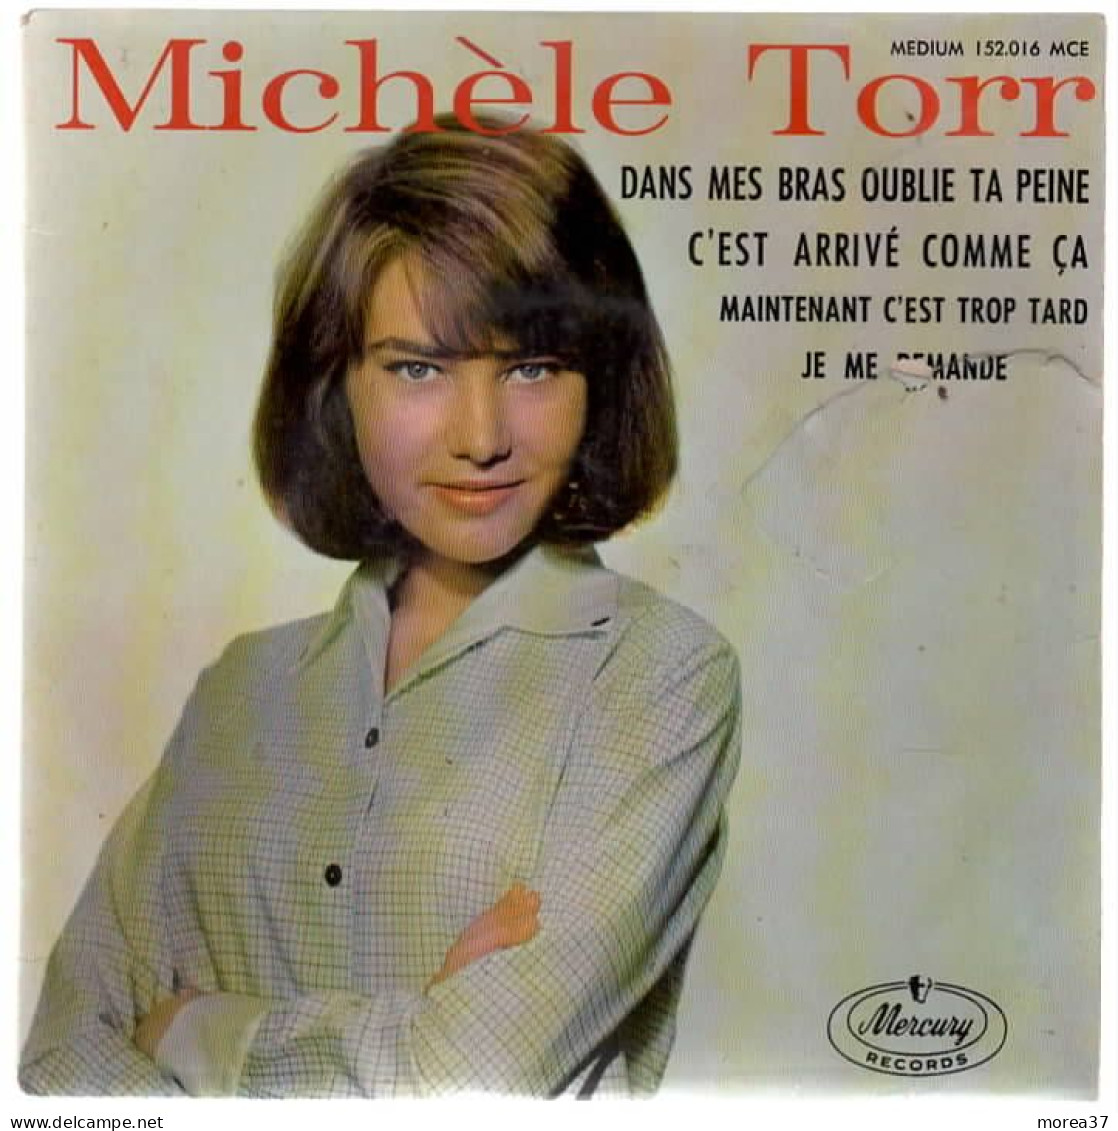 MICHELE TORR  Dans Mes Bras Oublie Ta Peine    MERCURY RECORD  152.016 MCE - Autres - Musique Française